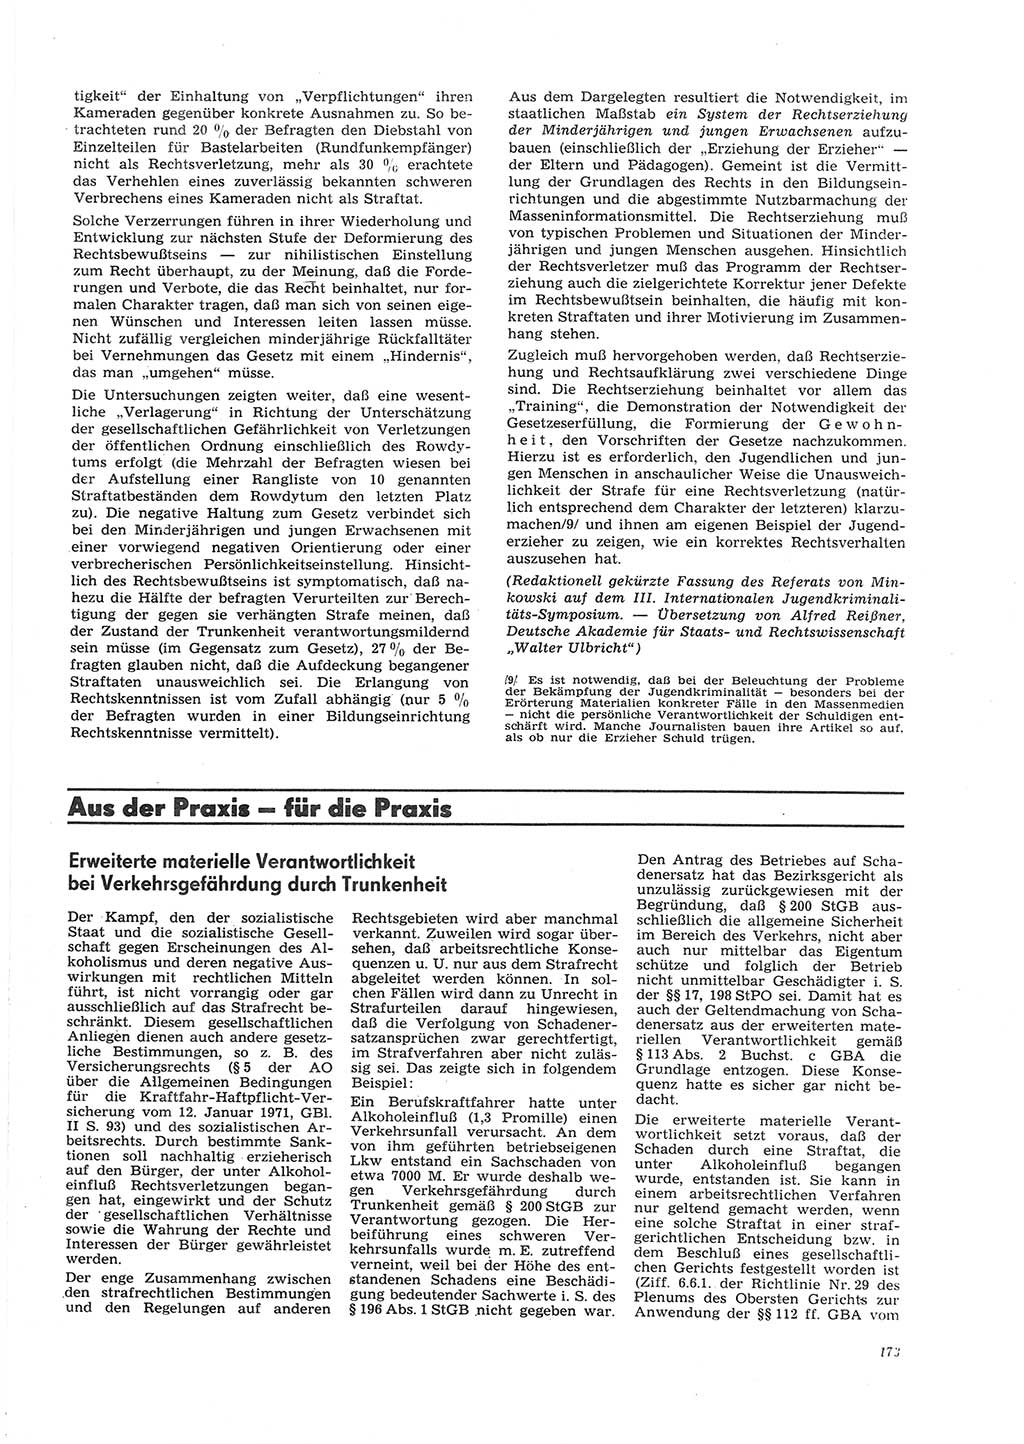 Neue Justiz (NJ), Zeitschrift für Recht und Rechtswissenschaft [Deutsche Demokratische Republik (DDR)], 26. Jahrgang 1972, Seite 173 (NJ DDR 1972, S. 173)